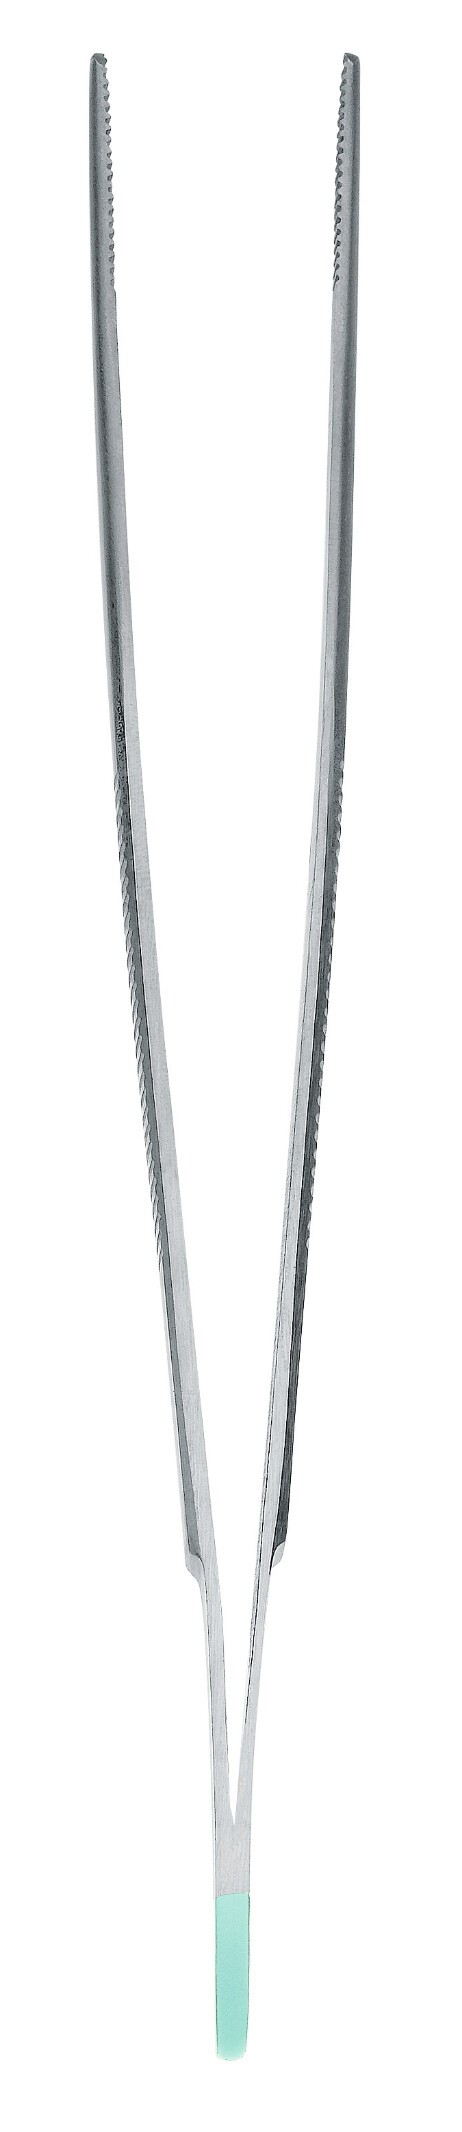 Sommersprosseninstrument Standardpinzette anatomisch gerade 14cm